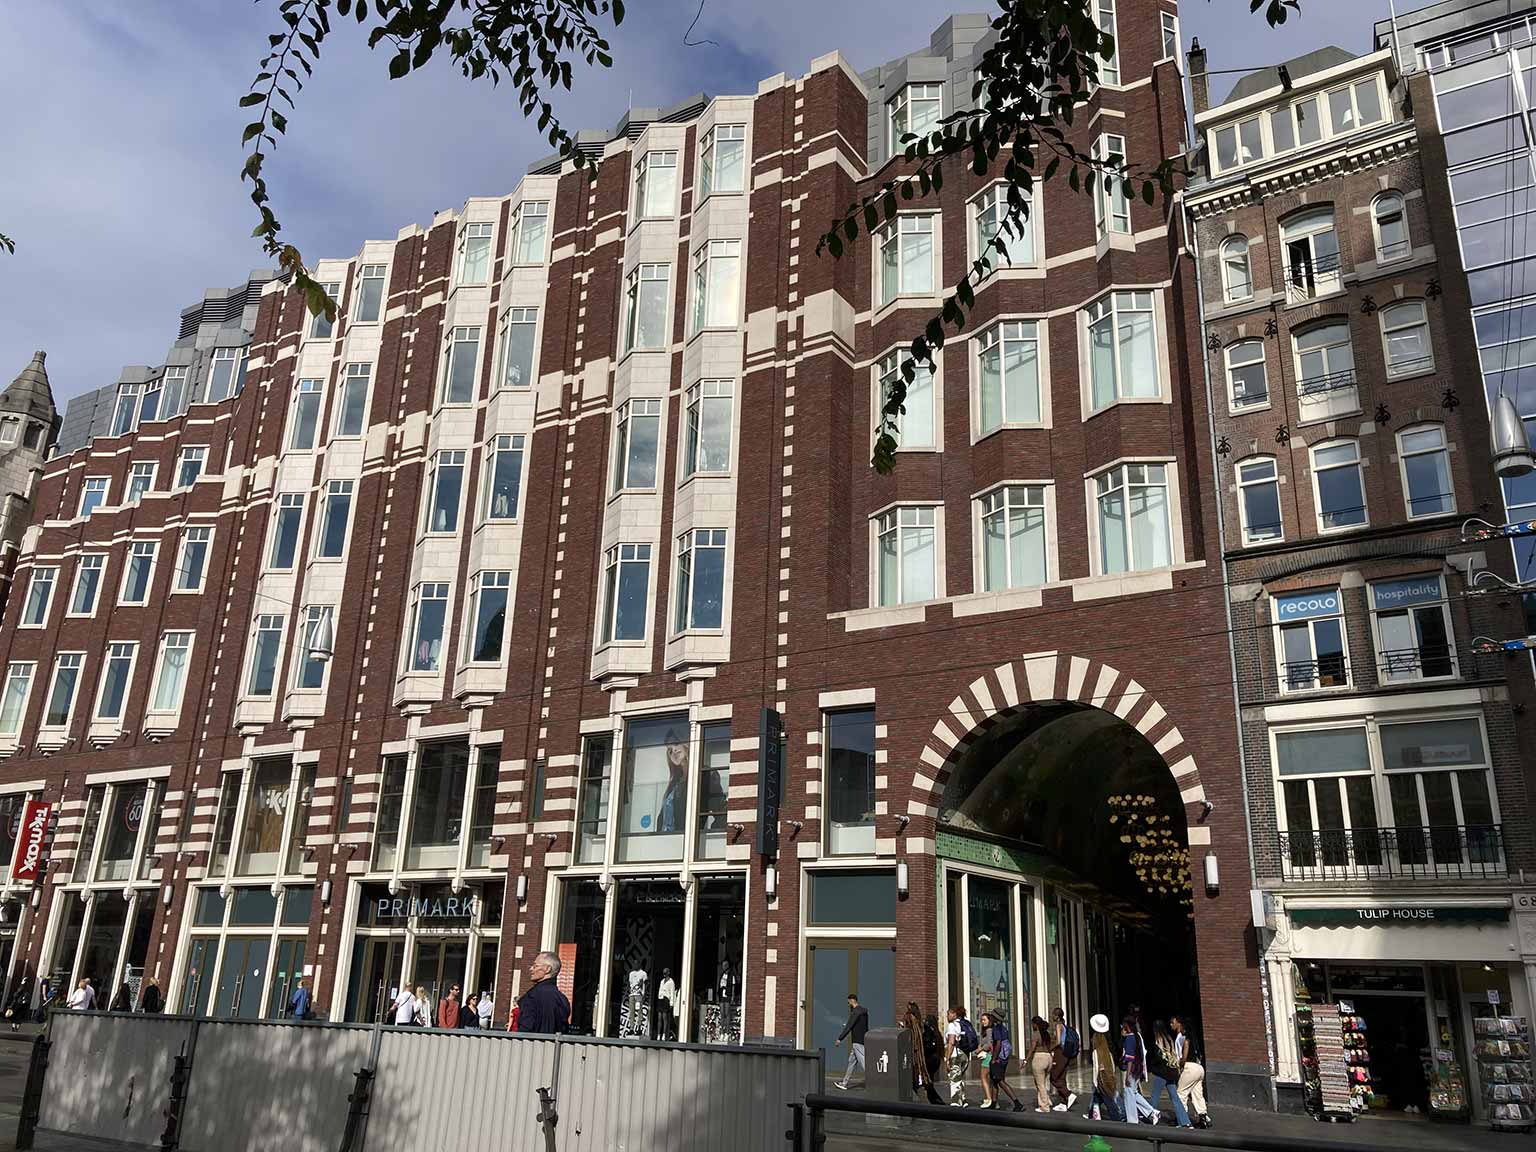 Damrak 70-79, Amsterdam, renovated in 2016, now clothing retailer Primark